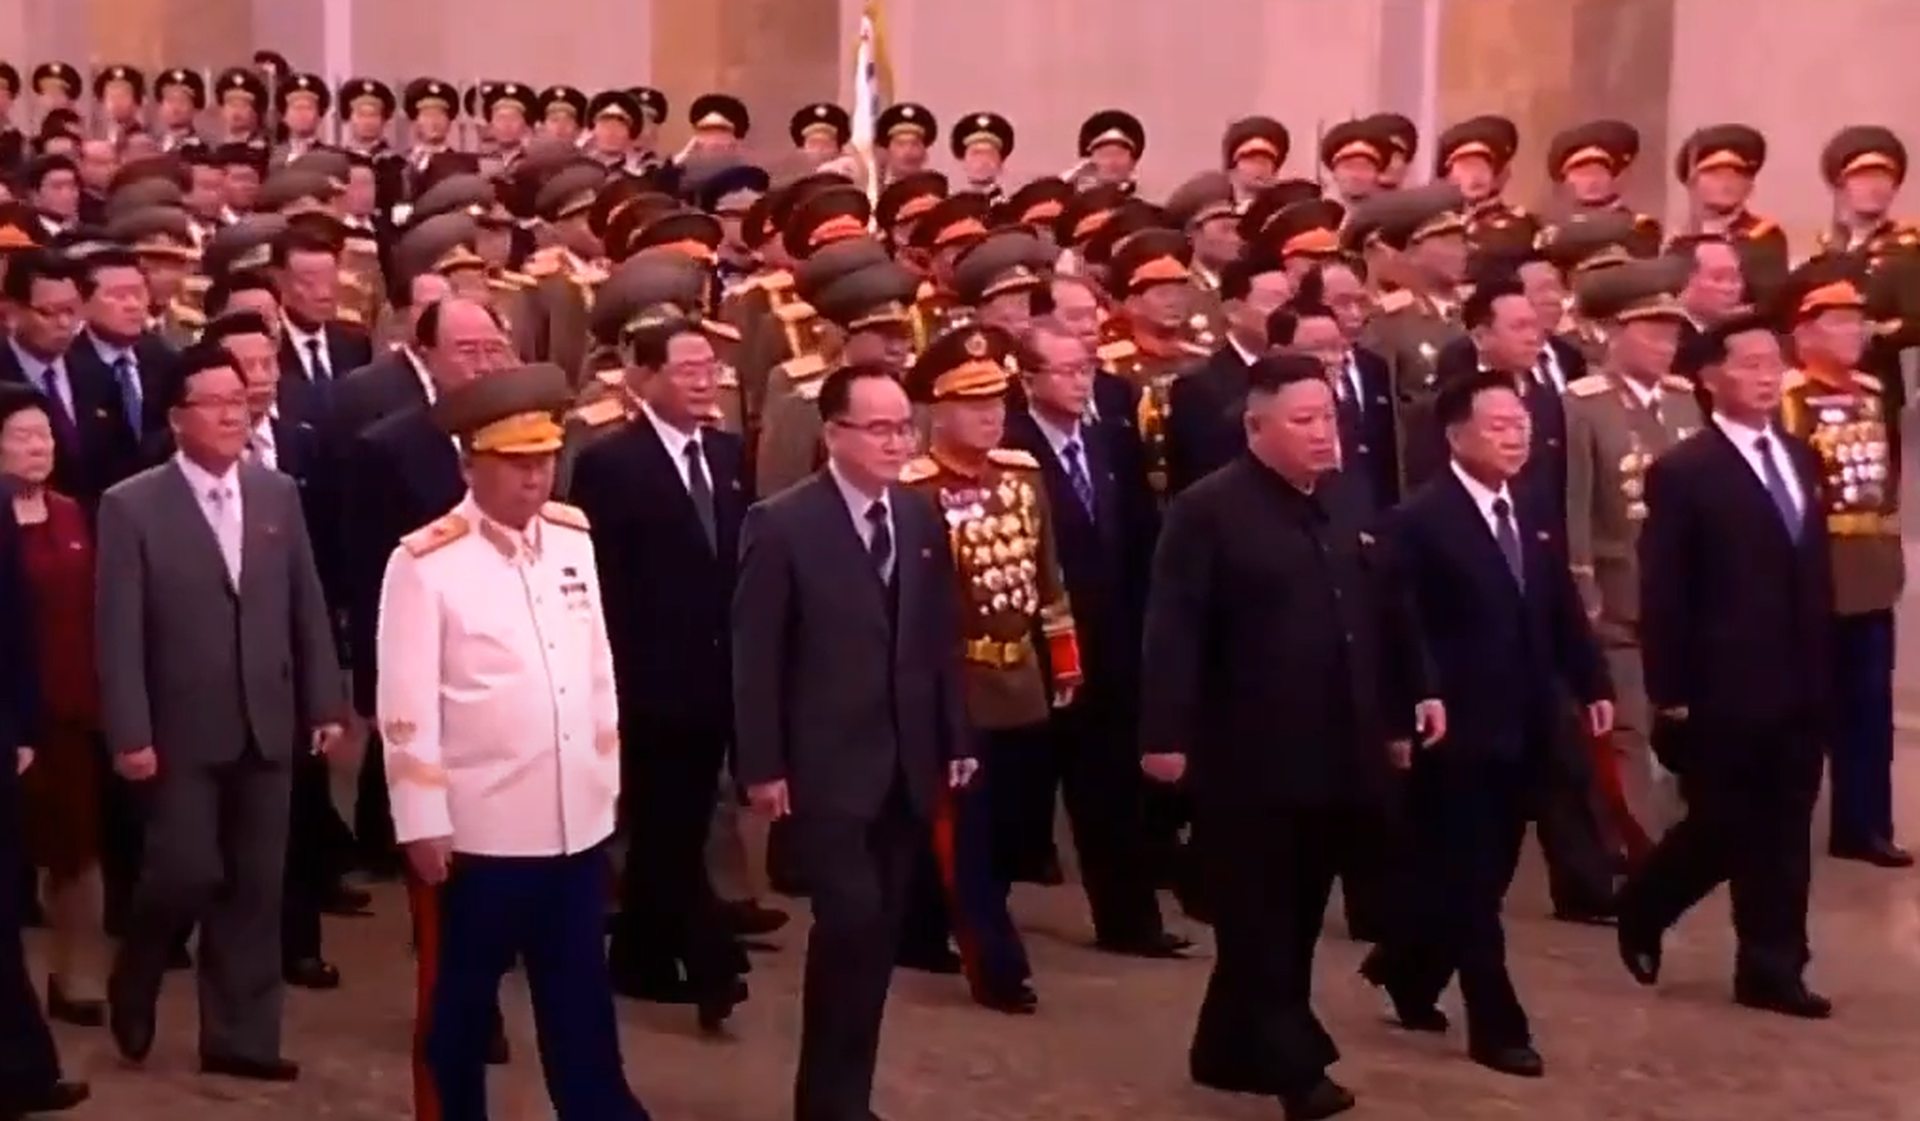 朝鲜官方播出画面显示，在列队行进过程中，前排队列官员中并未有金与正。（朝鲜中央电视台视频截图）